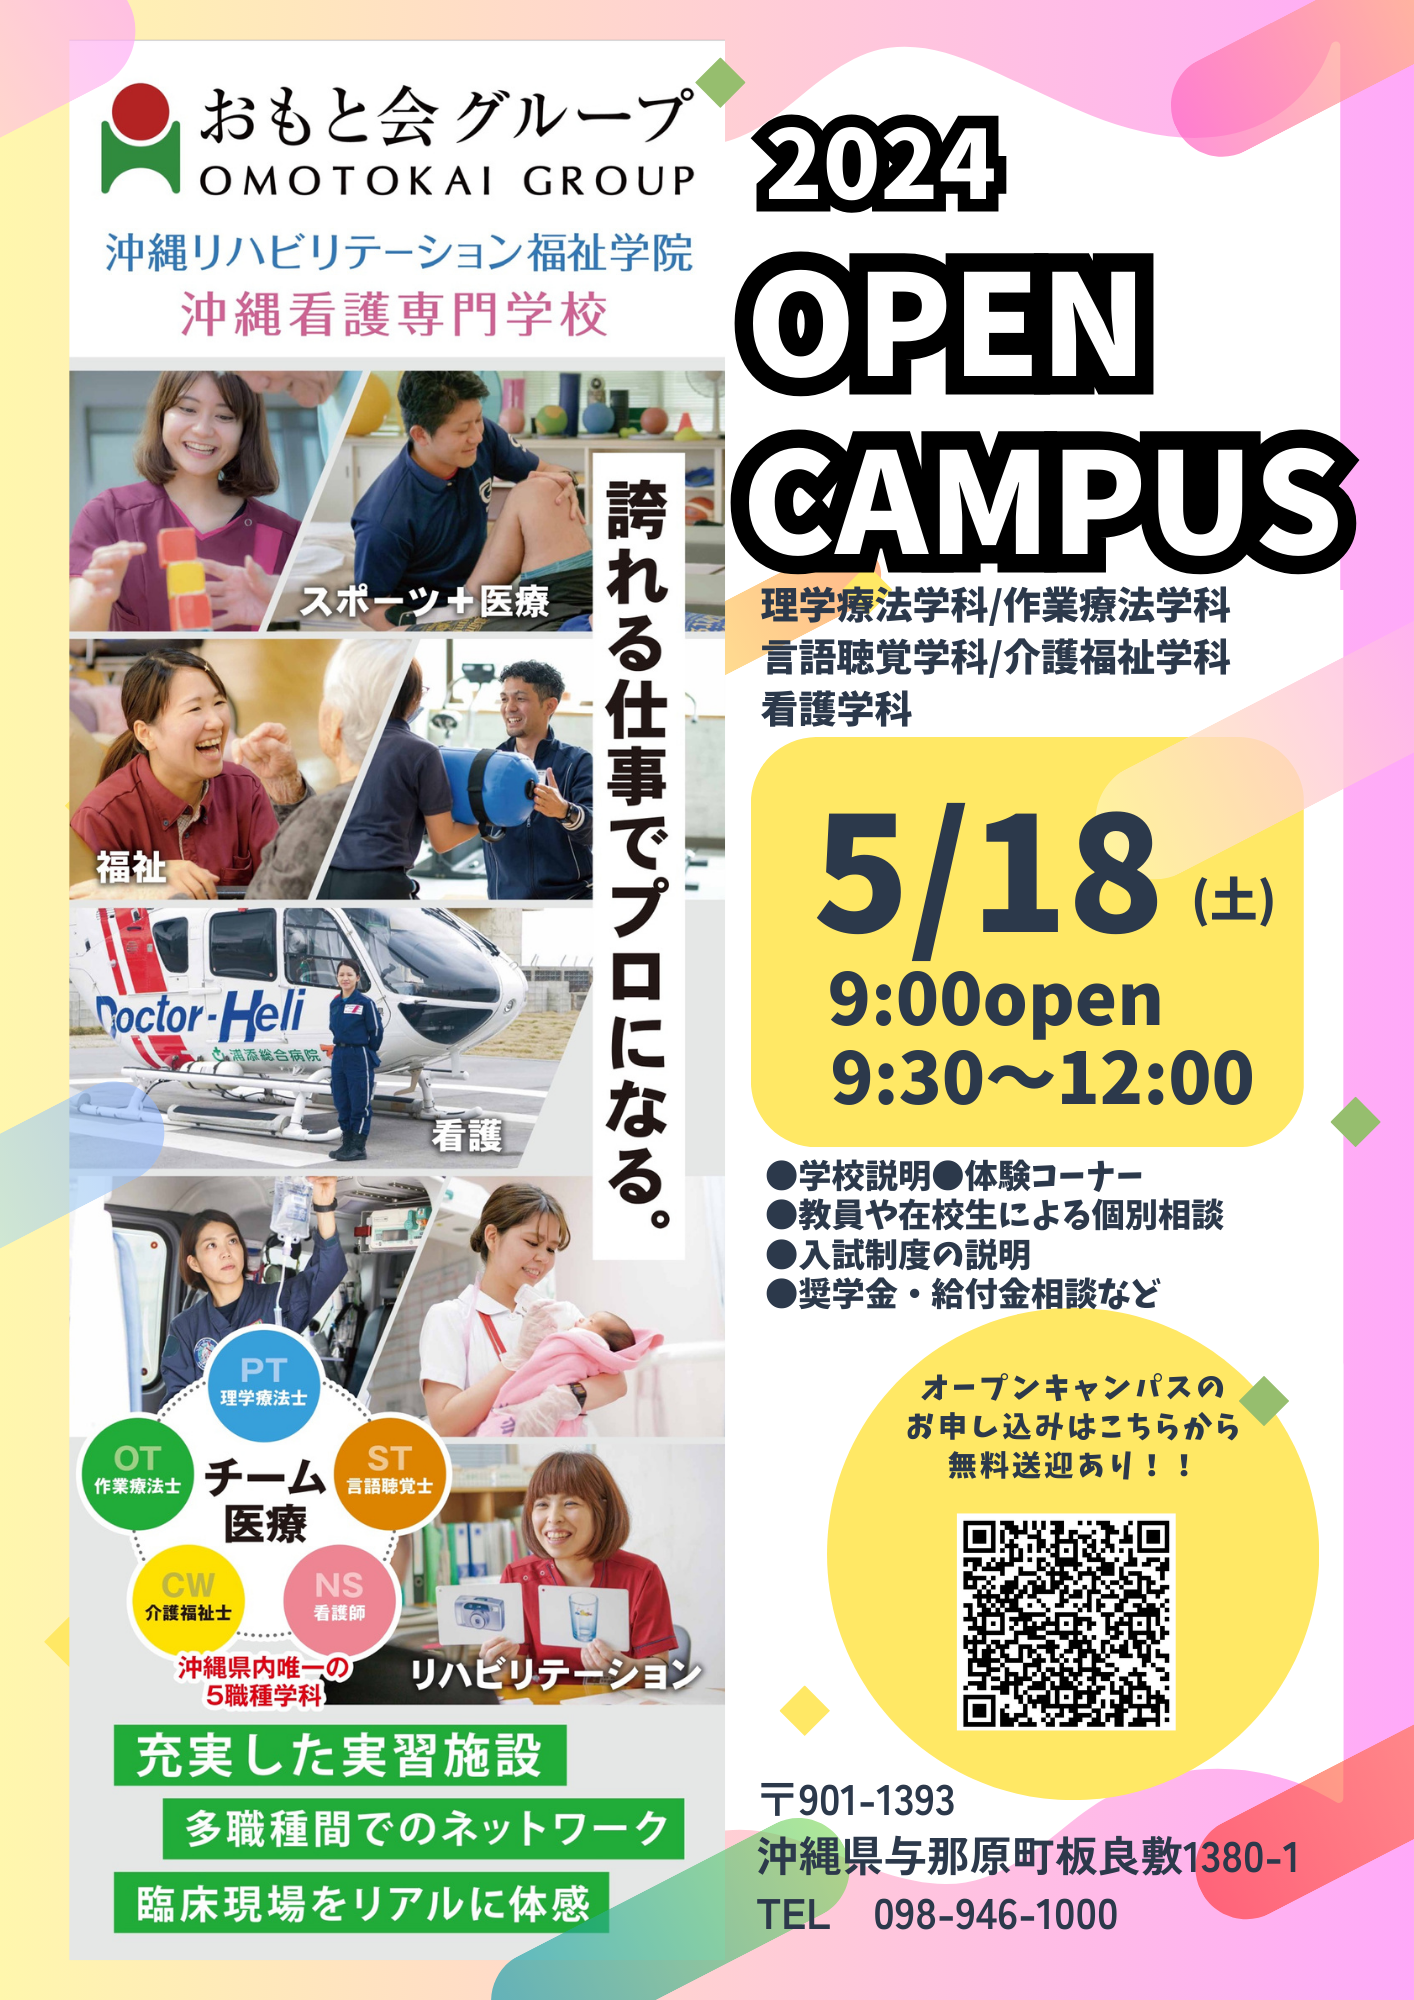 ★5/18(土)オープンキャンパス開催★